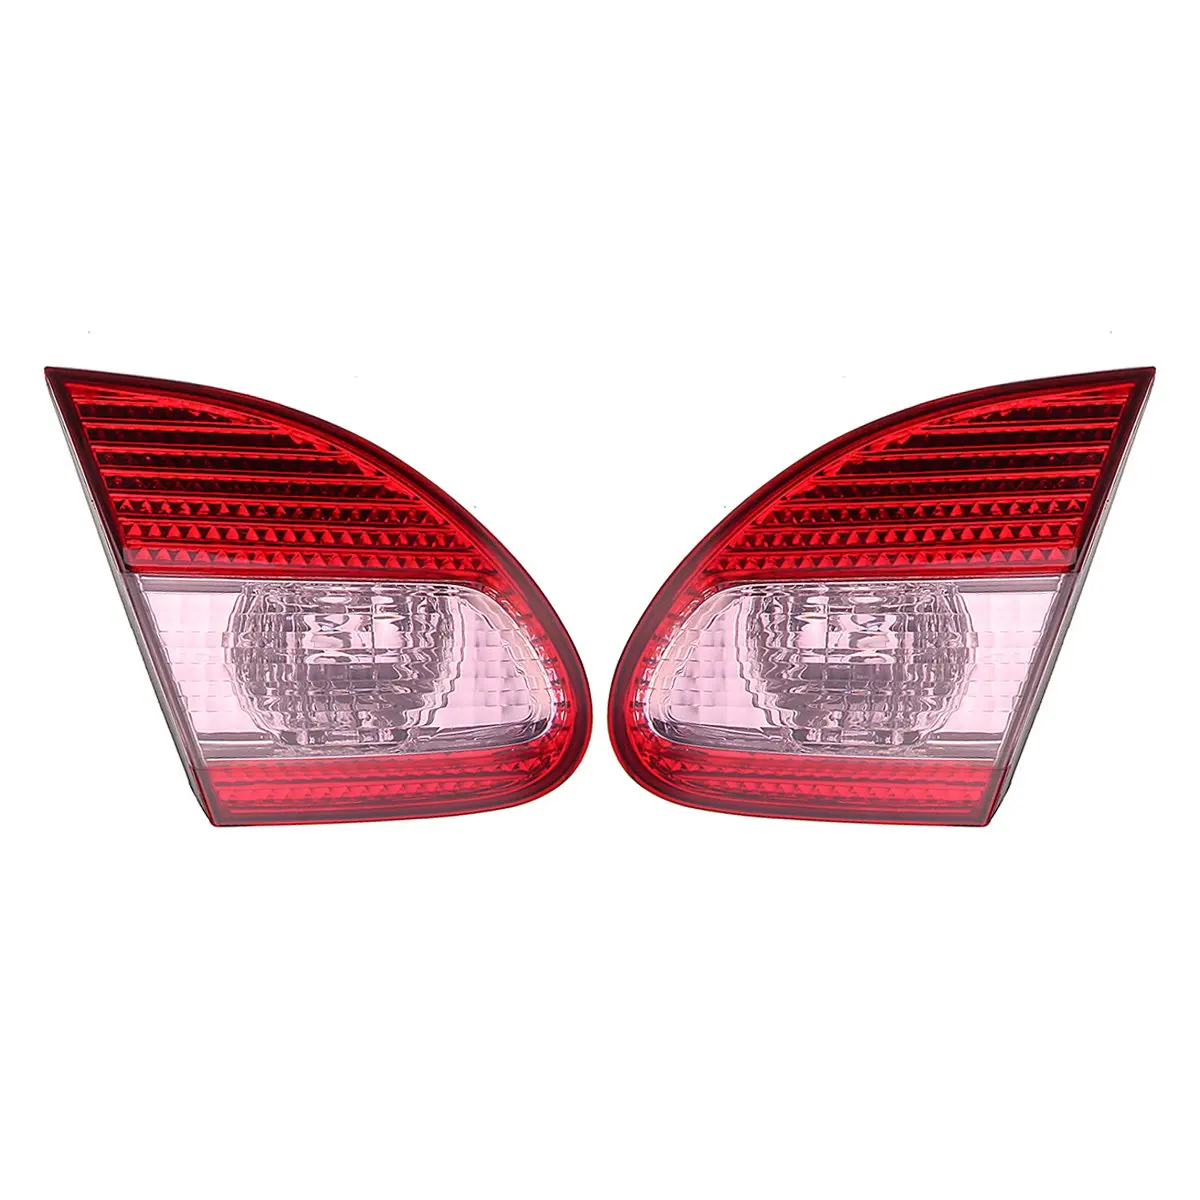 Автомобильный задний тормозной светильник, крышка лампы красного цвета без лампы для Toyota Corolla 2003-2008 TO2800144, автомобильный светильник, стильный корпус